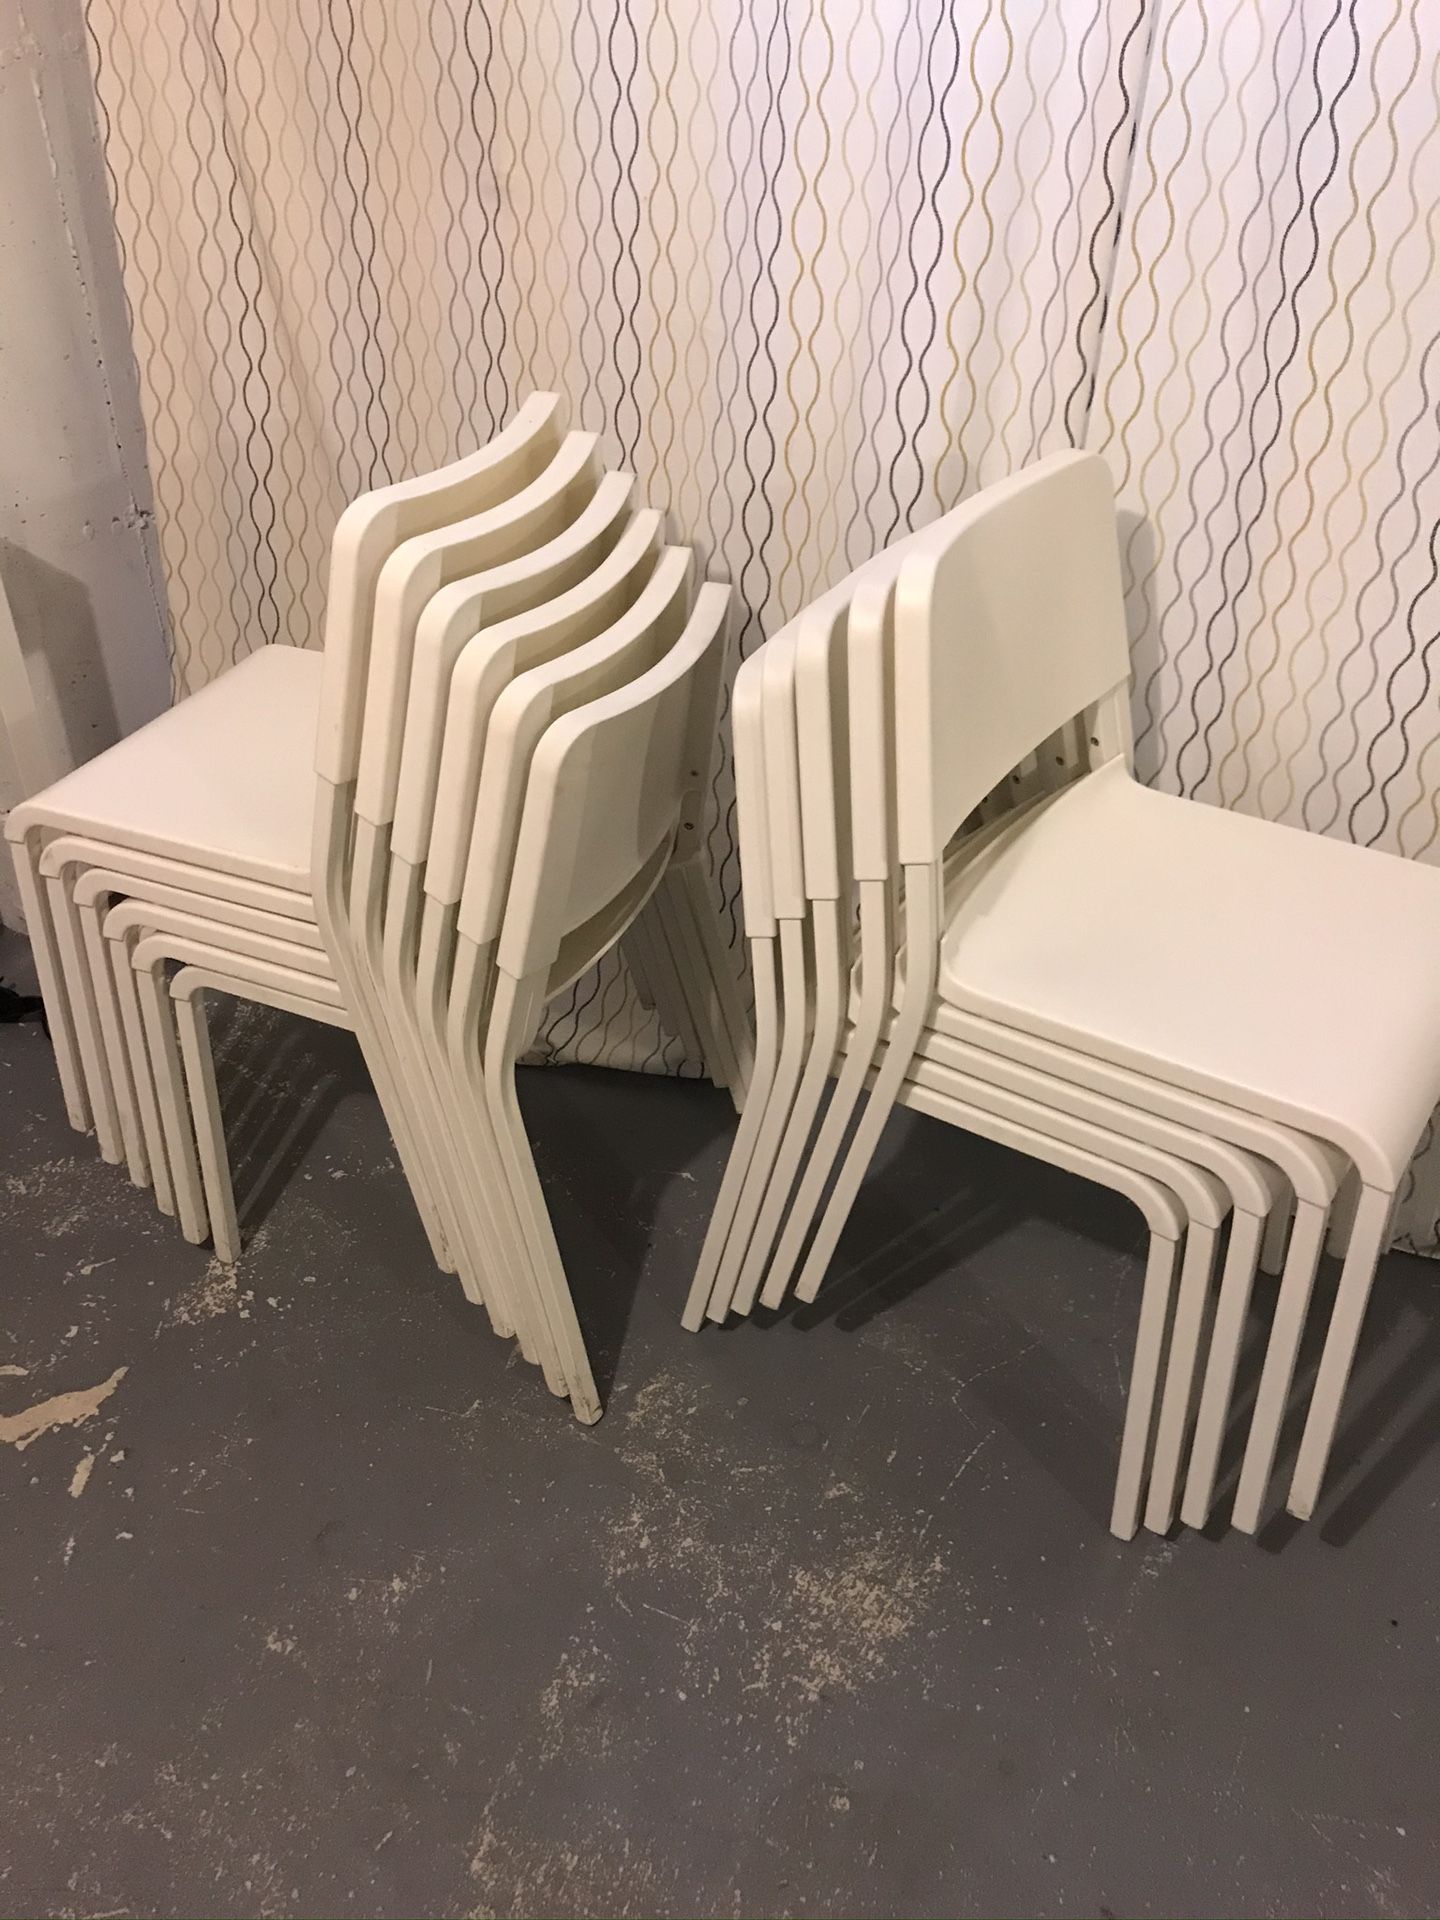 IKEA Original white Chairs $20 each